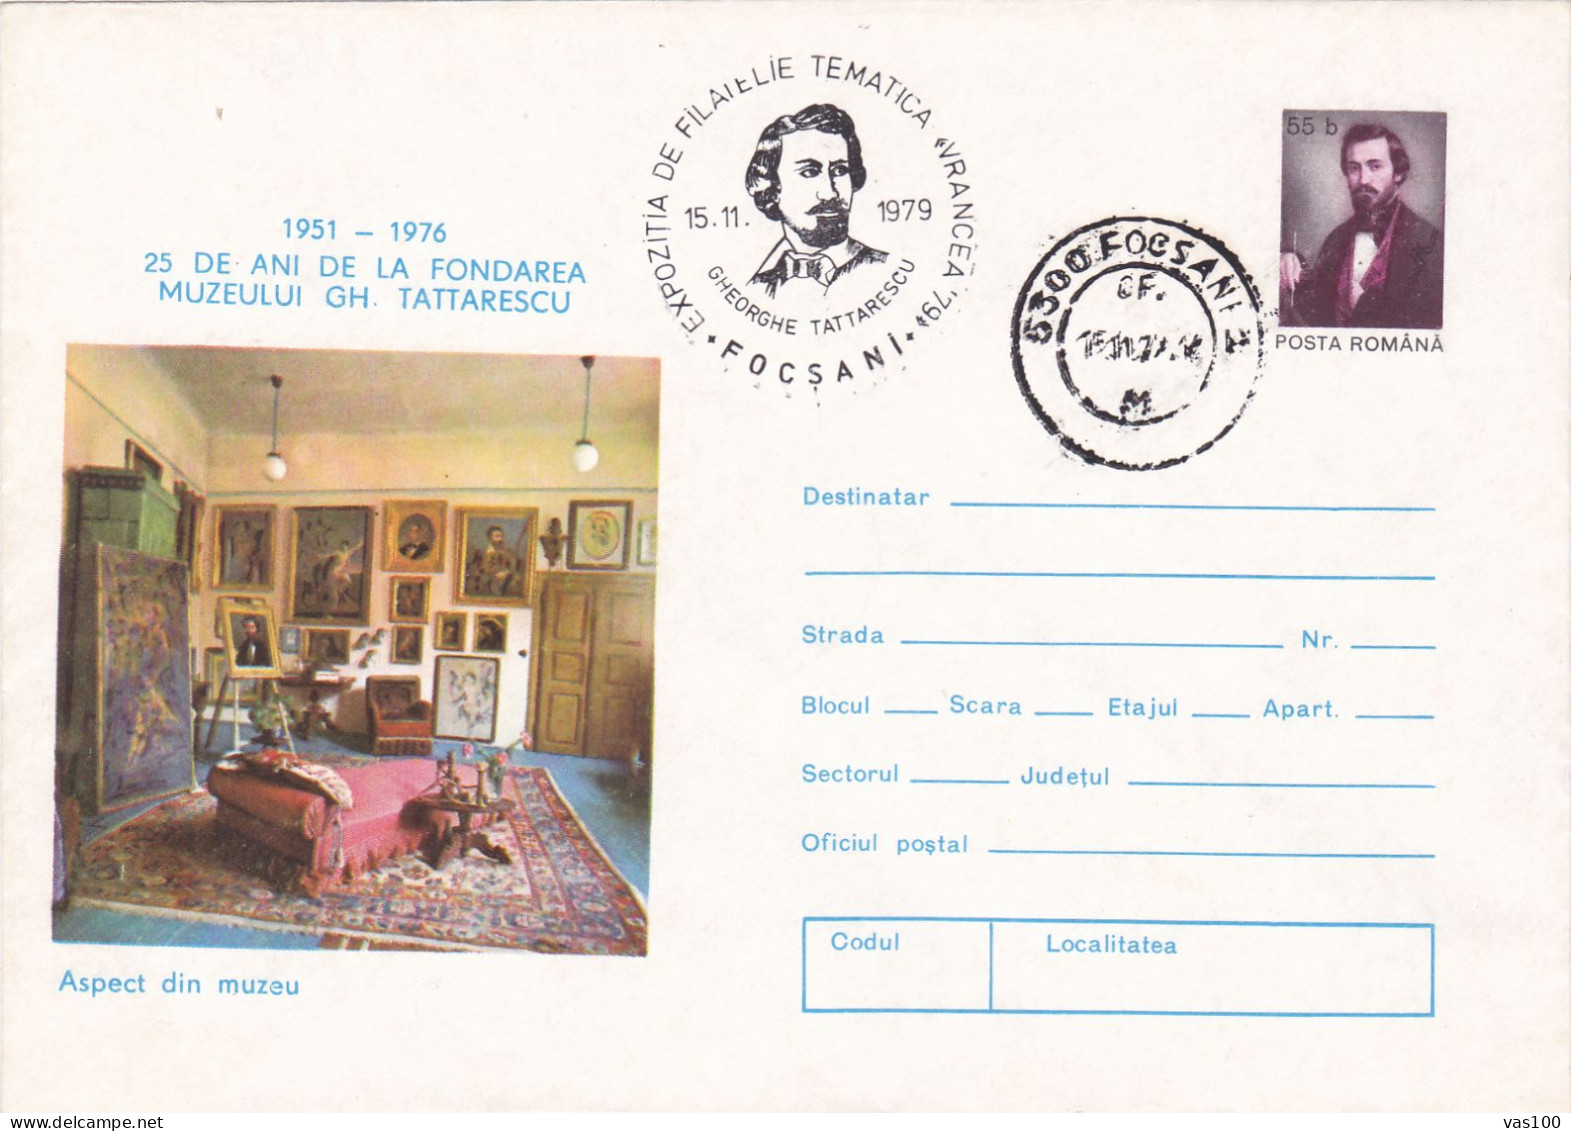 MUSEUM GH. TATTARESCU COVERS  1979  ROMANIA - Briefe U. Dokumente